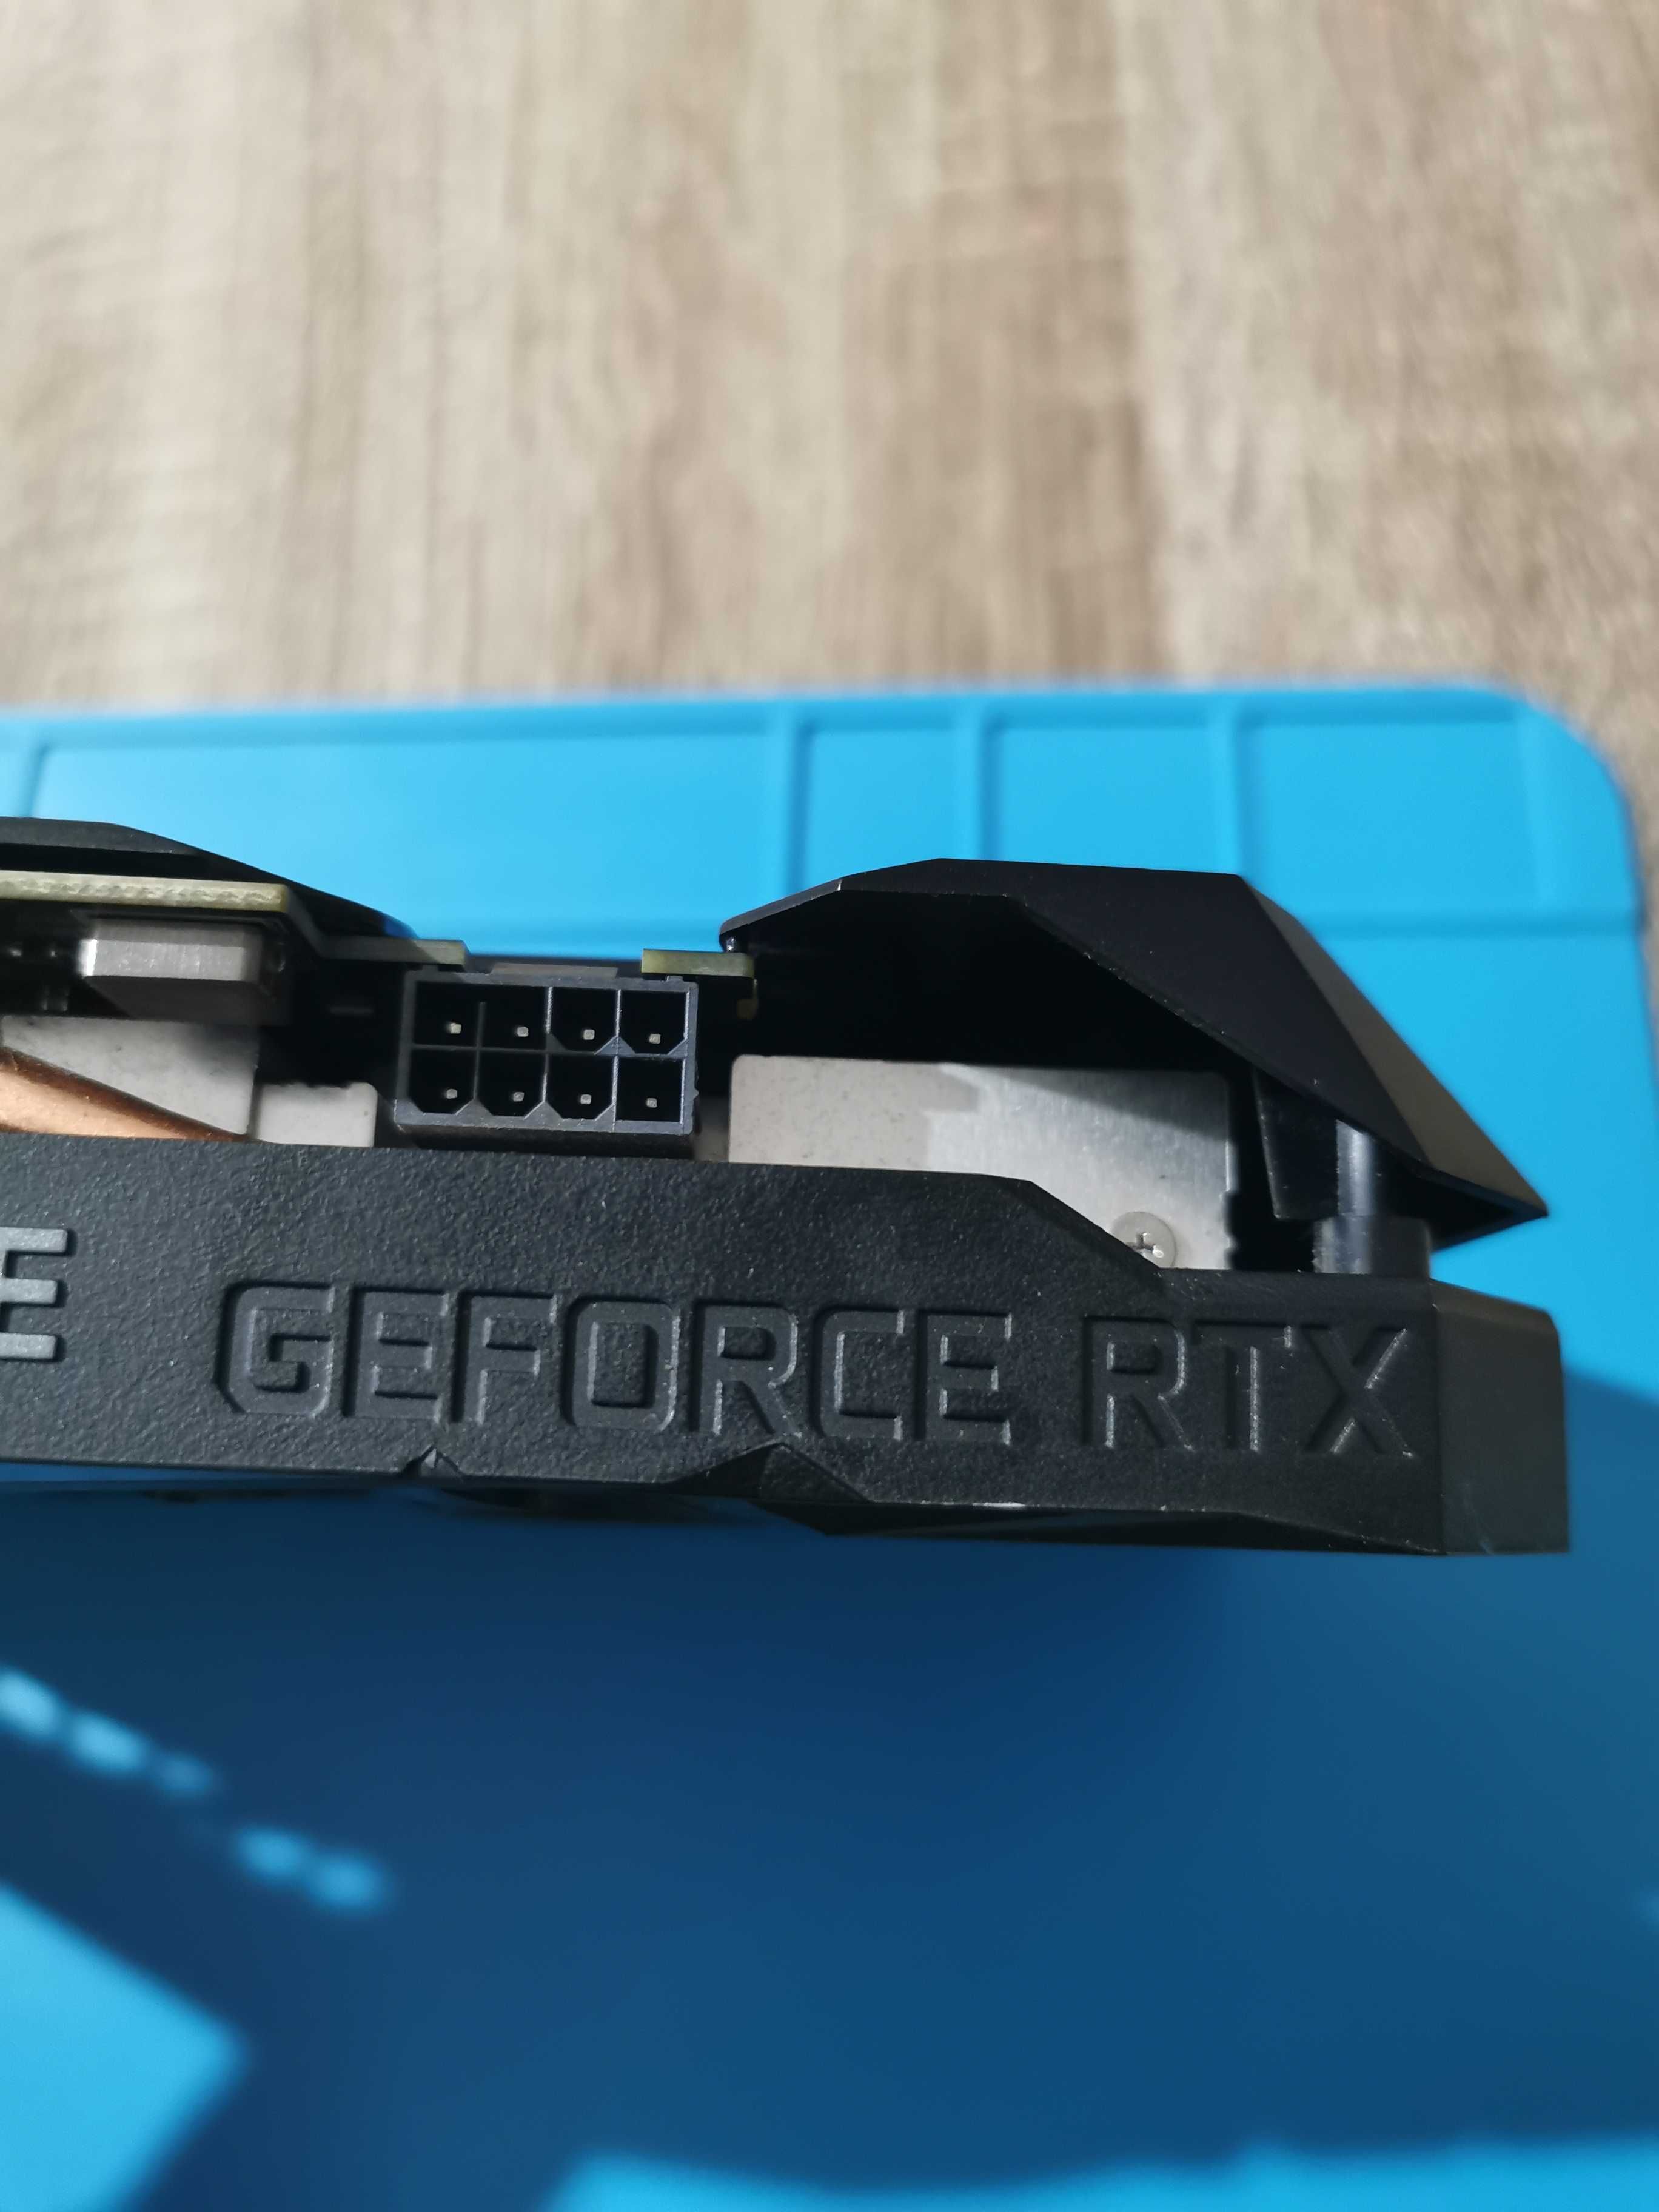 Gigabyte GeForce RTX 2060 OC